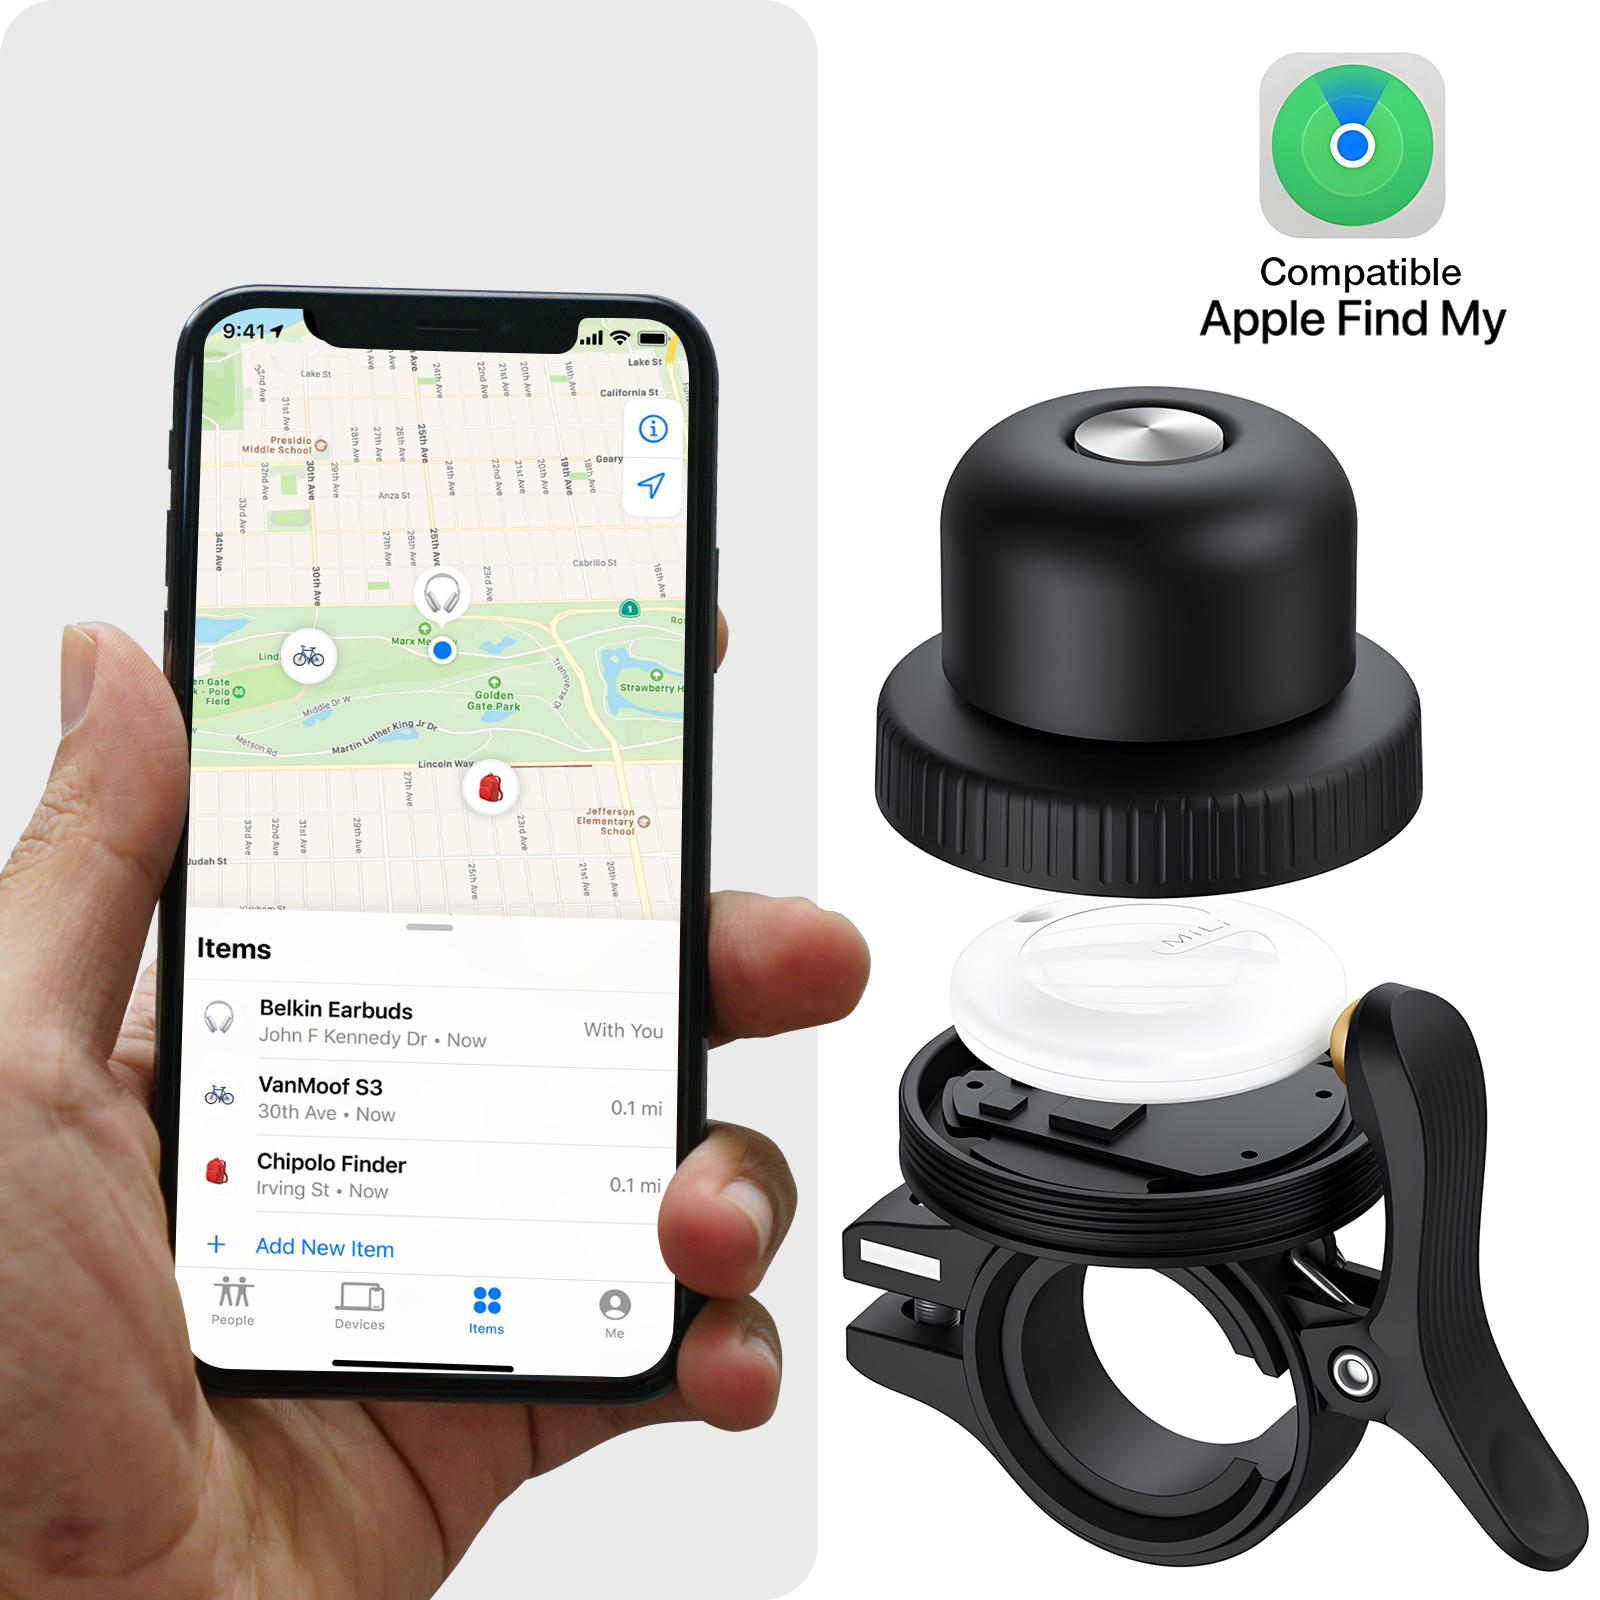 Sonnette connectée pour Vélo, Tracker compatible Apple Find My, Noir - MiLi  - Français